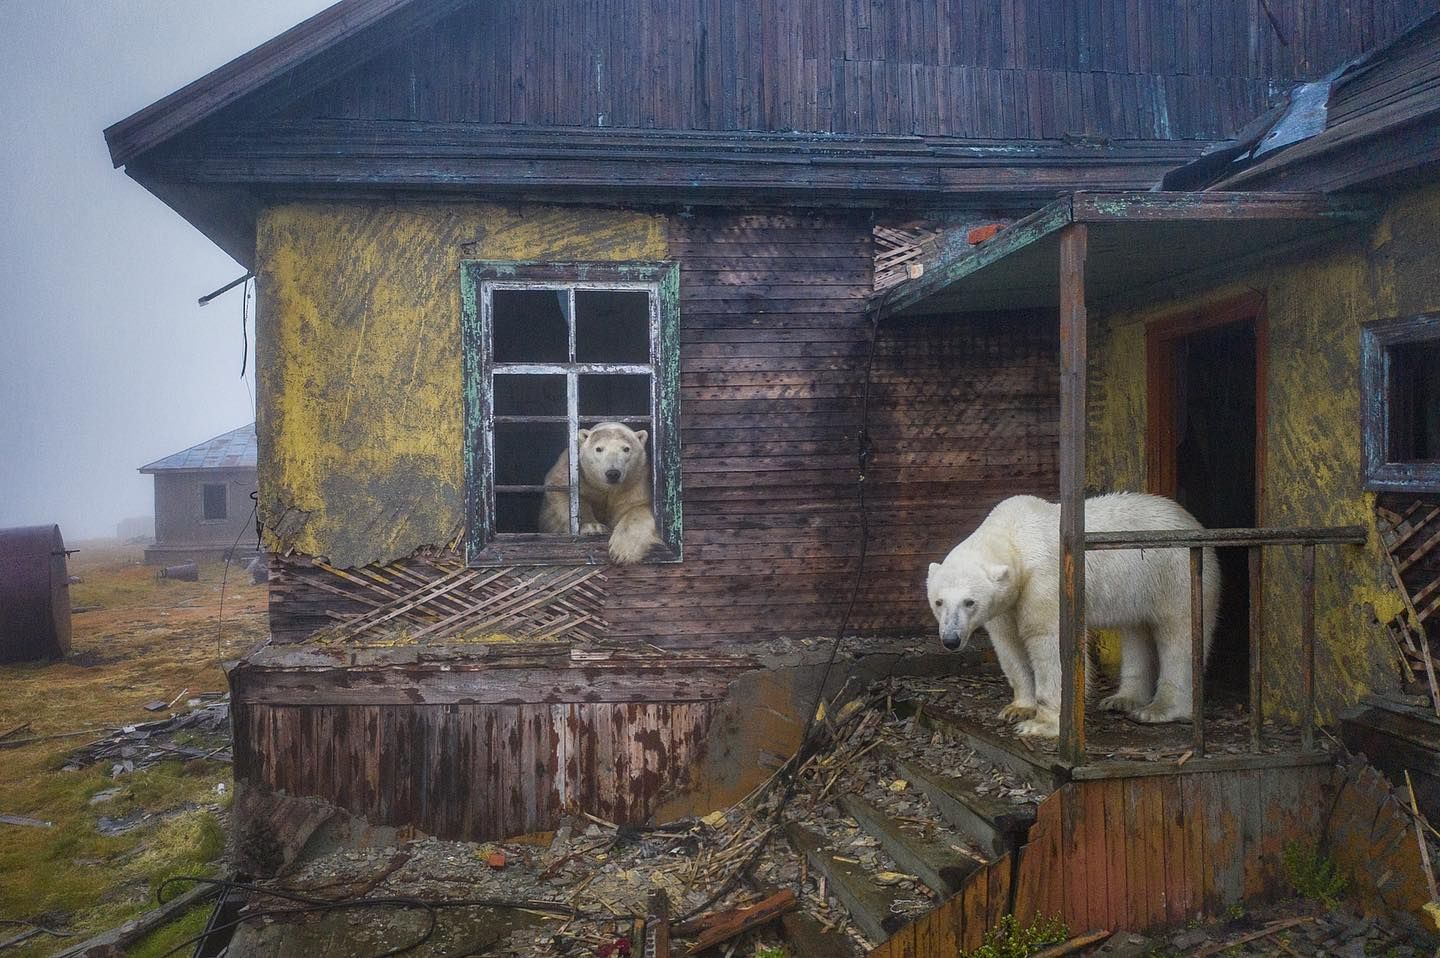  熊熊找新家！阿拉斯加「北極熊」接管荒廢氣象站，悠閒探出窗外還知道要看鏡頭！ 